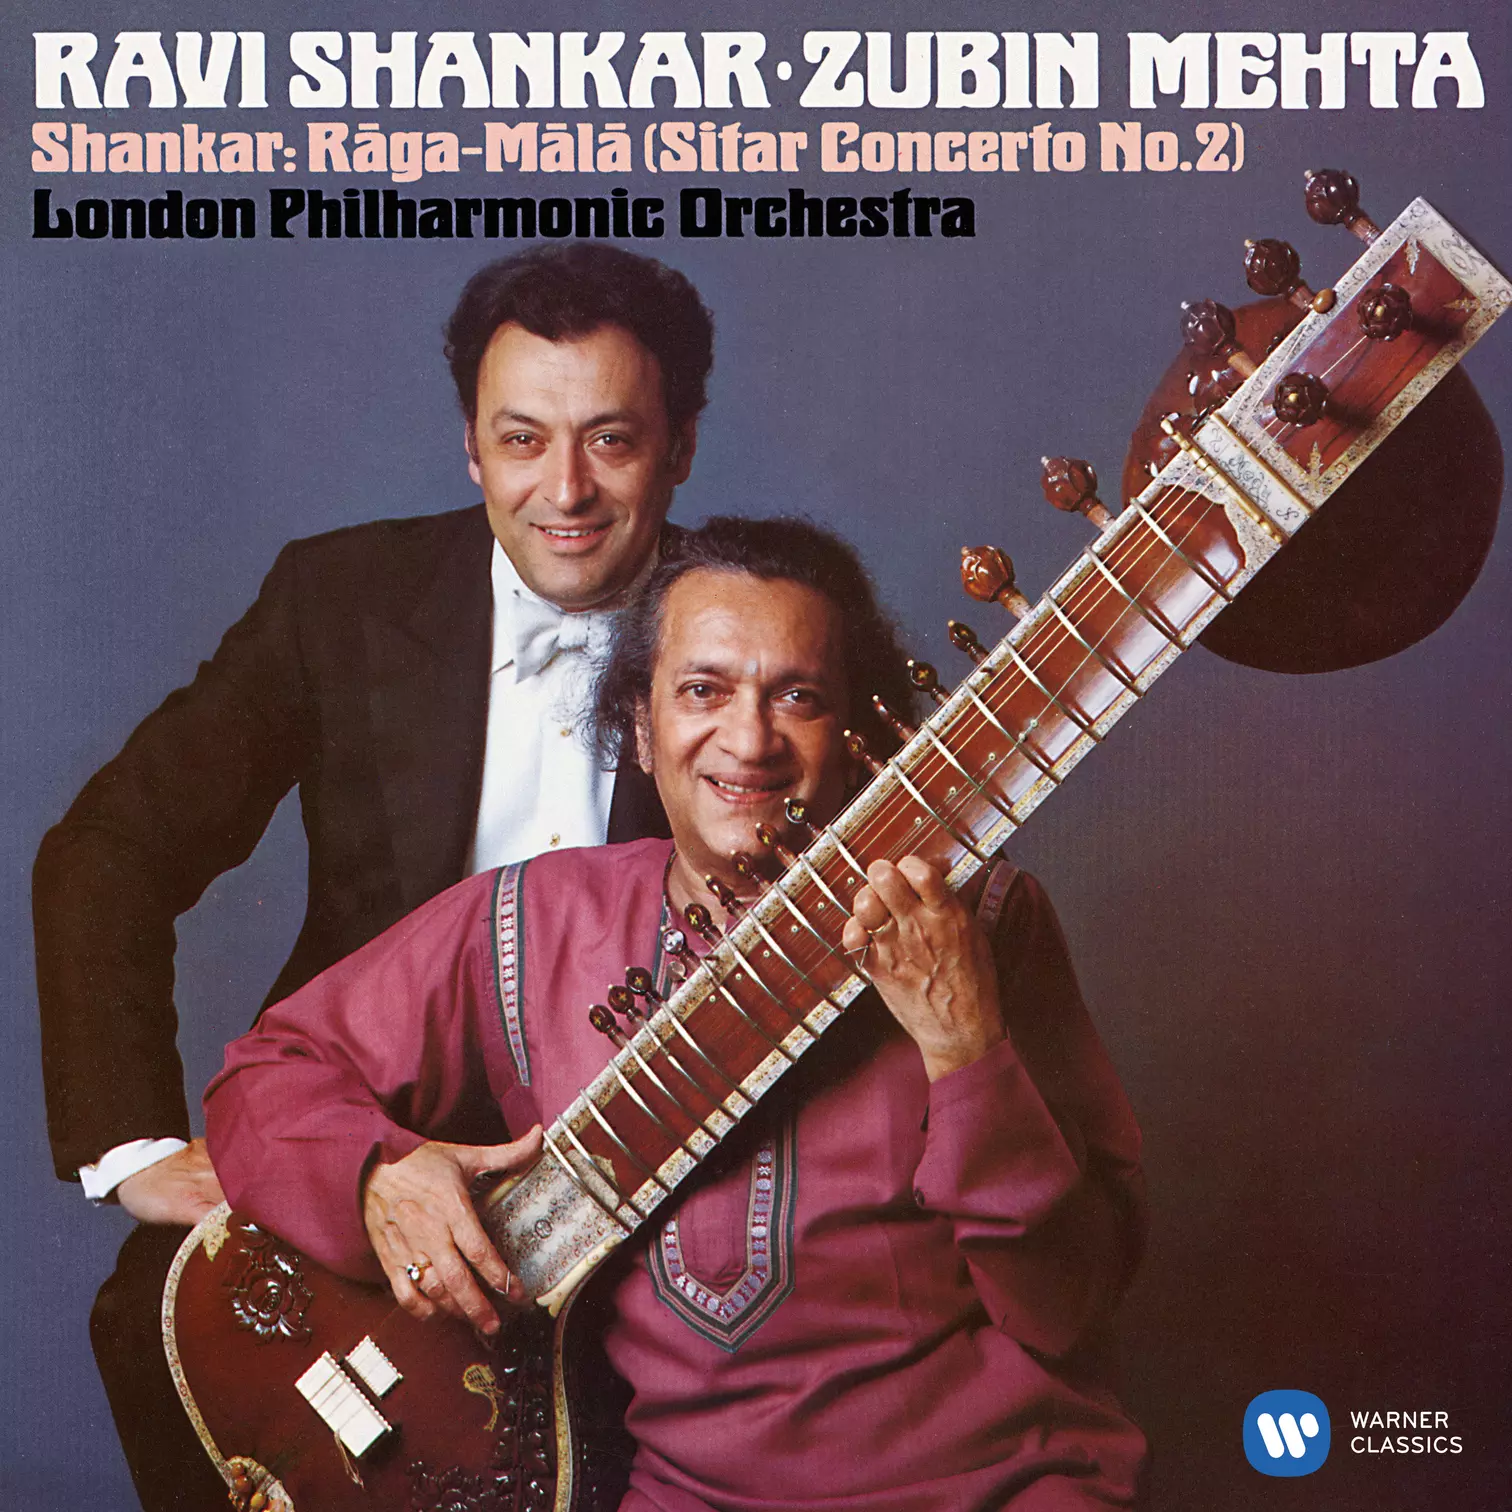 Shankar: Sitar Concerto No. 2